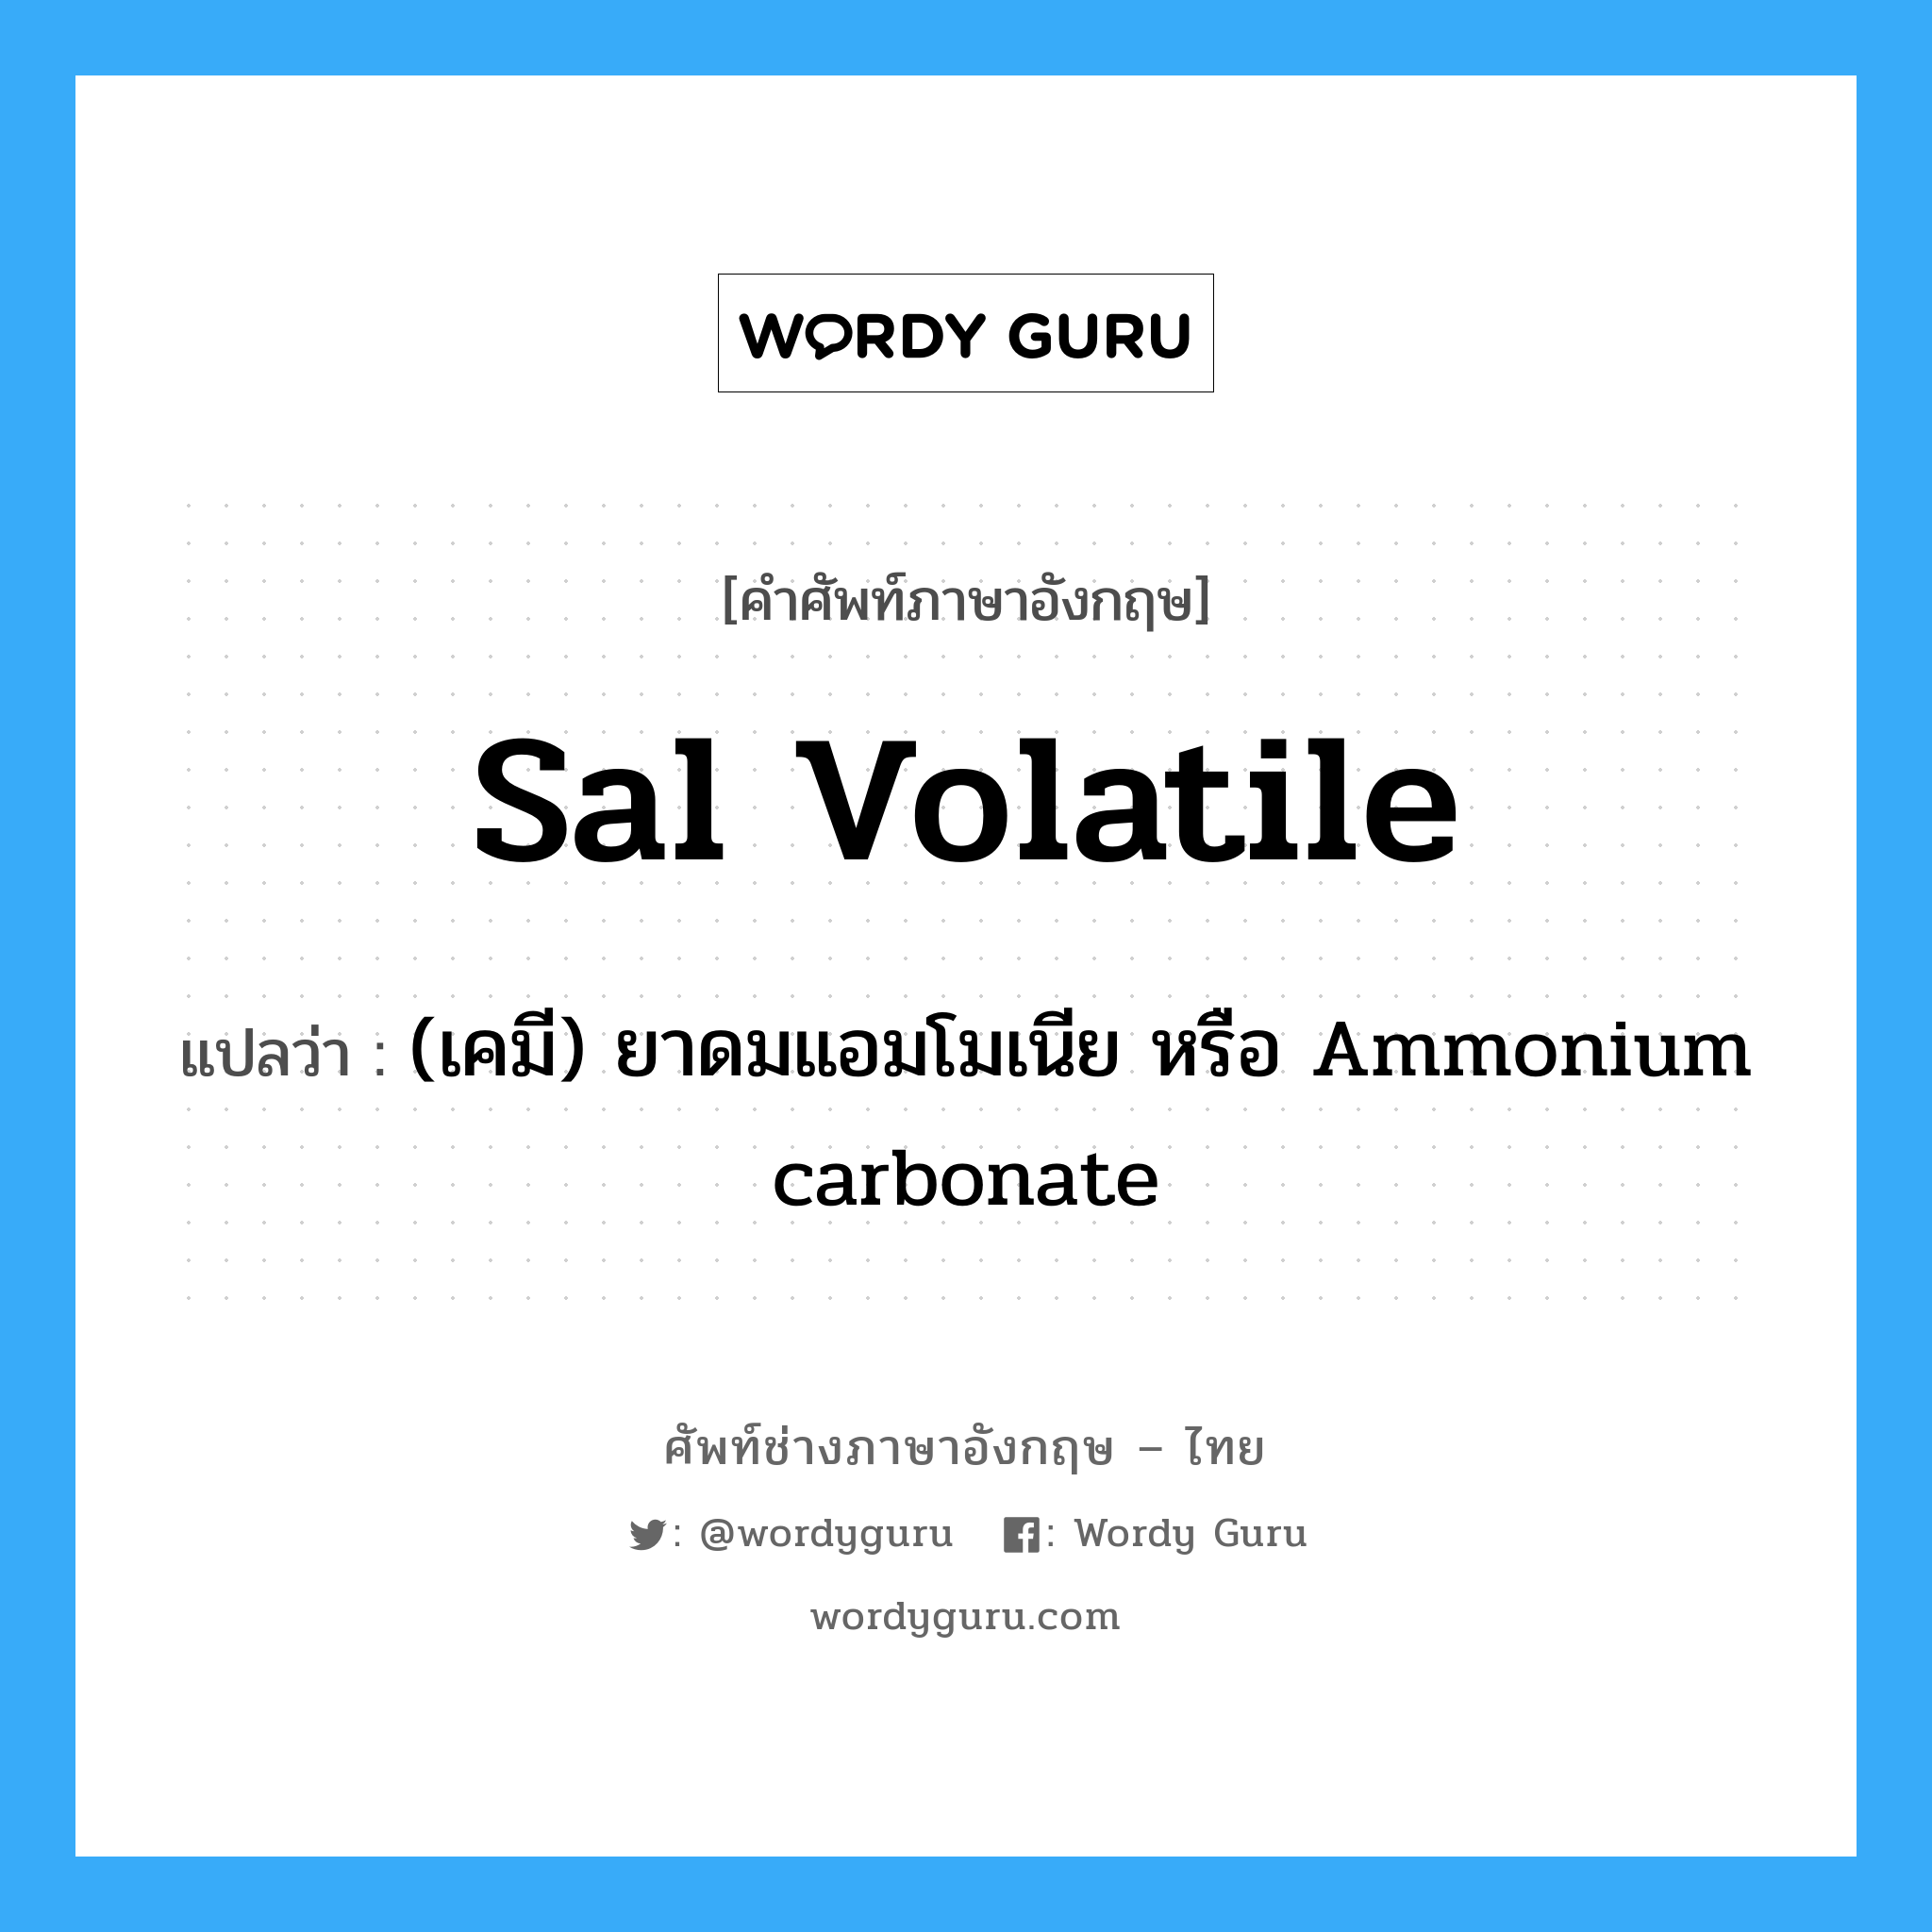 sal volatile แปลว่า?, คำศัพท์ช่างภาษาอังกฤษ - ไทย sal volatile คำศัพท์ภาษาอังกฤษ sal volatile แปลว่า (เคมี) ยาดมแอมโมเนีย หรือ Ammonium carbonate